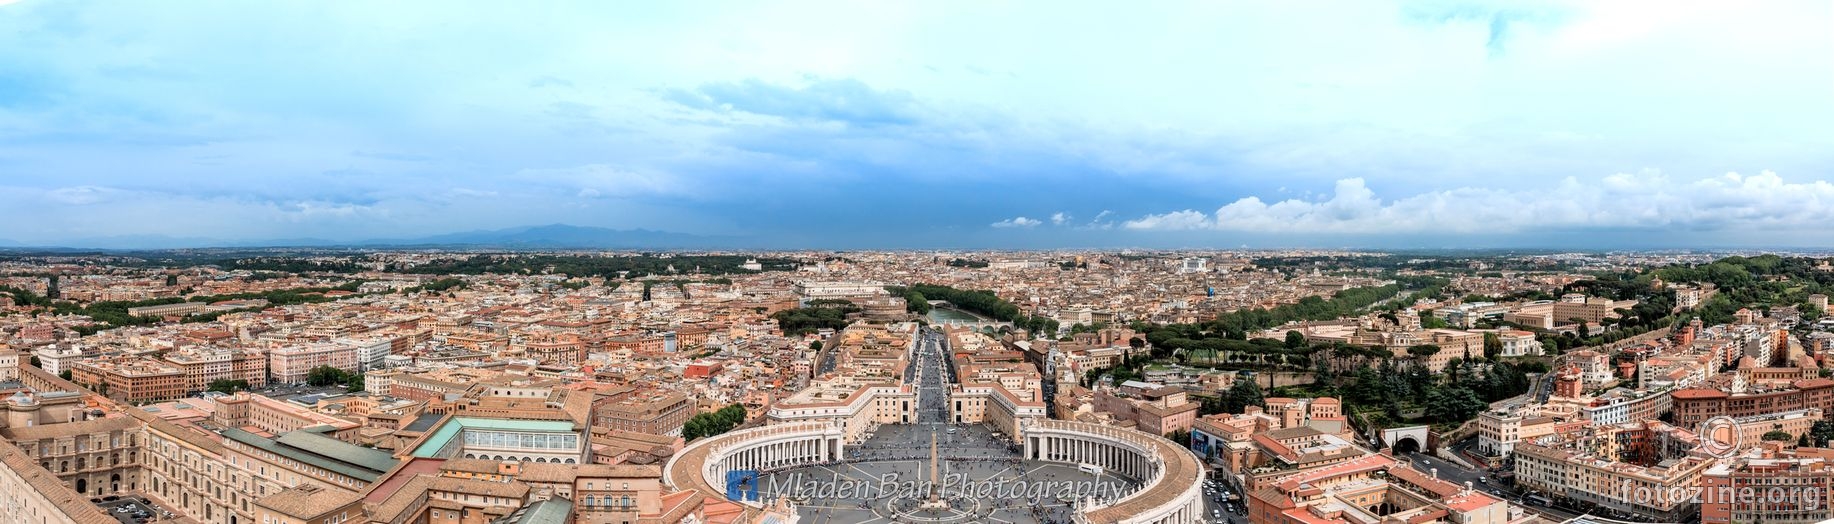 Rim i Vatikan